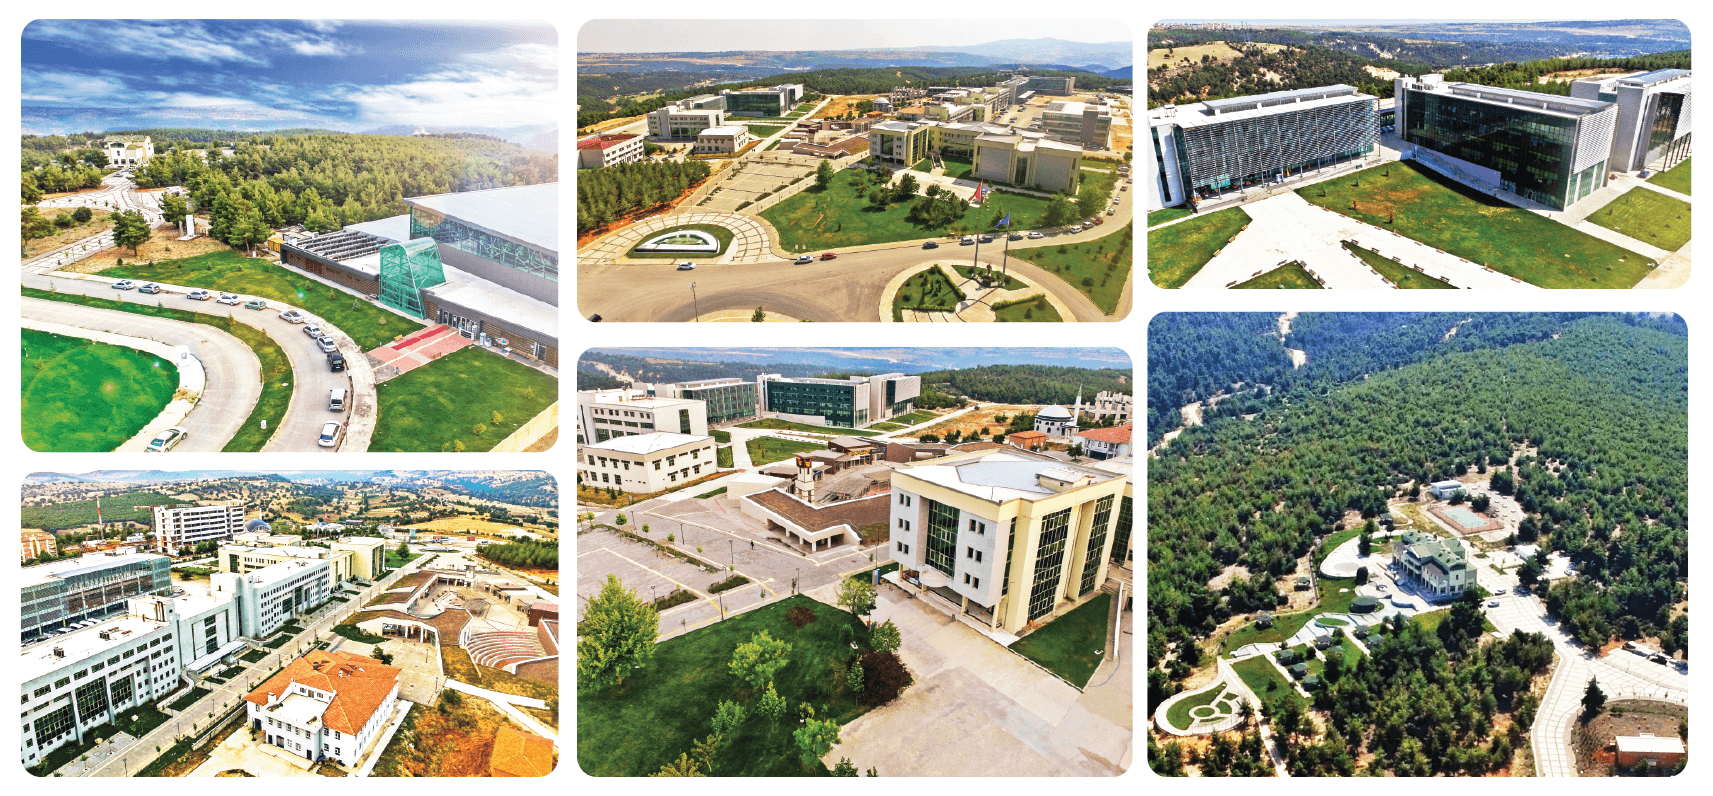 Uşak Üniversitesi Yerleşkesi